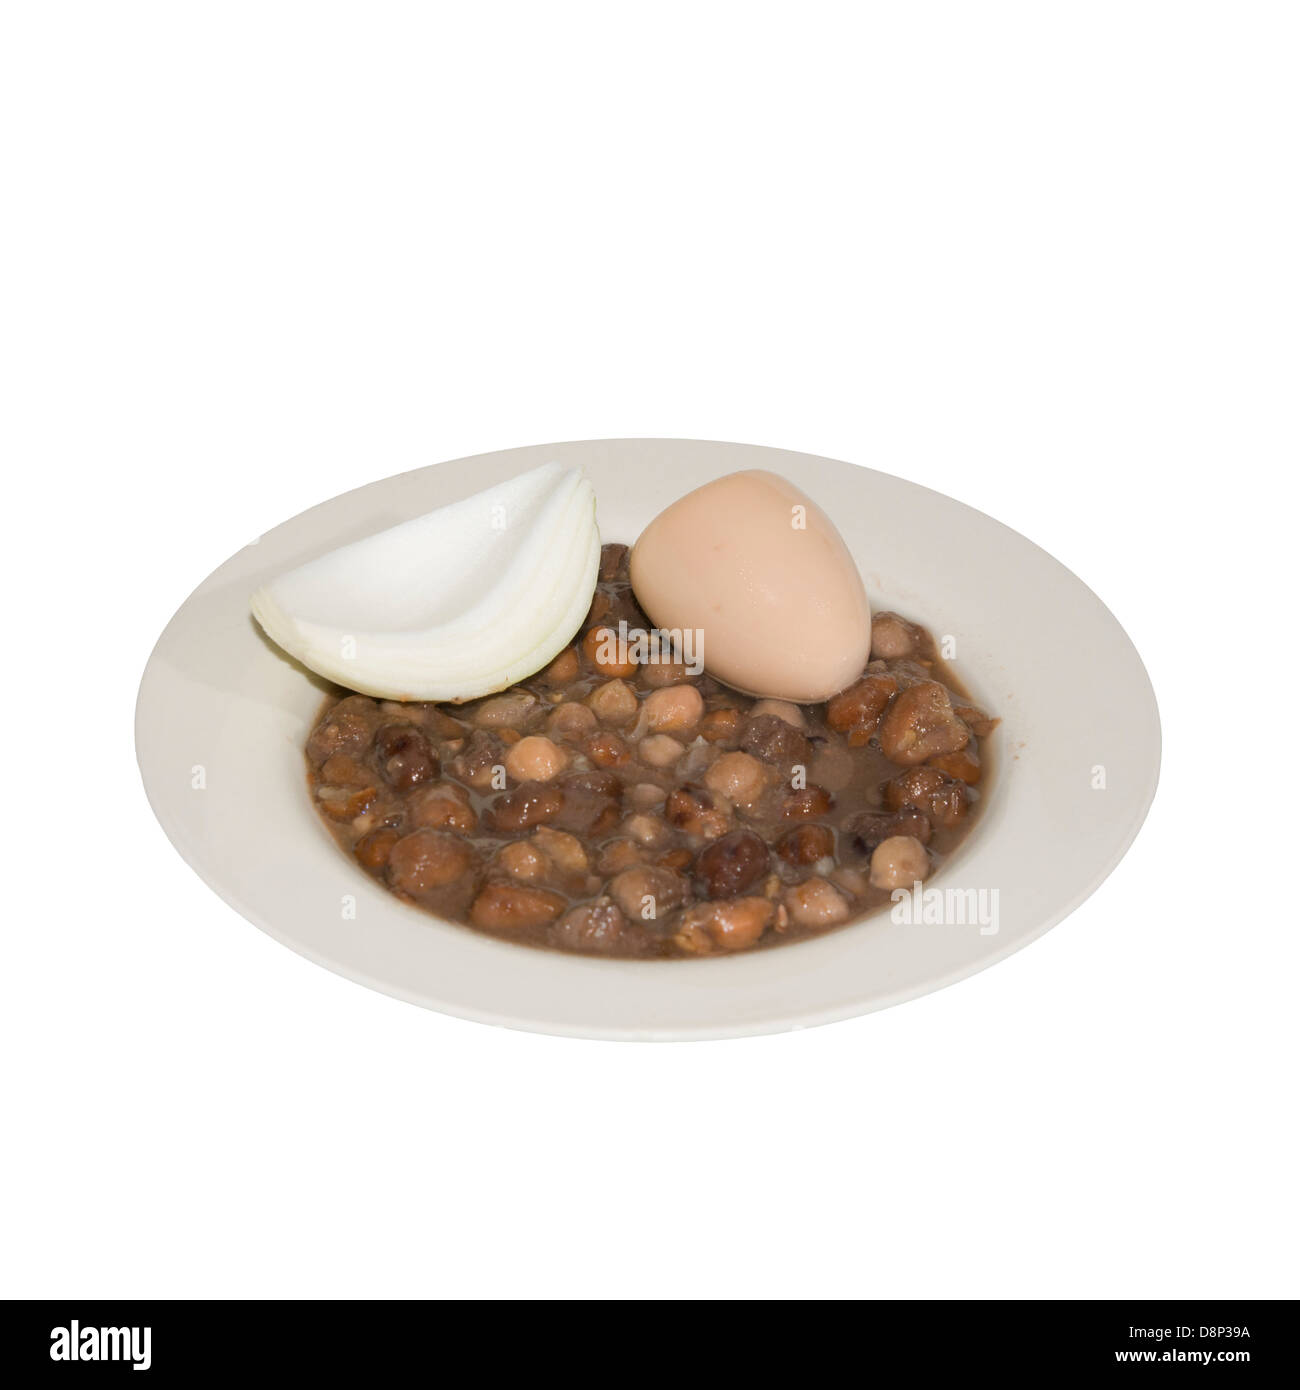 Ful medames un egiziano prima colazione piatto di cottura faba beans mangiato con pane o pita e cipolla spesso servito con uovo sodo Foto Stock